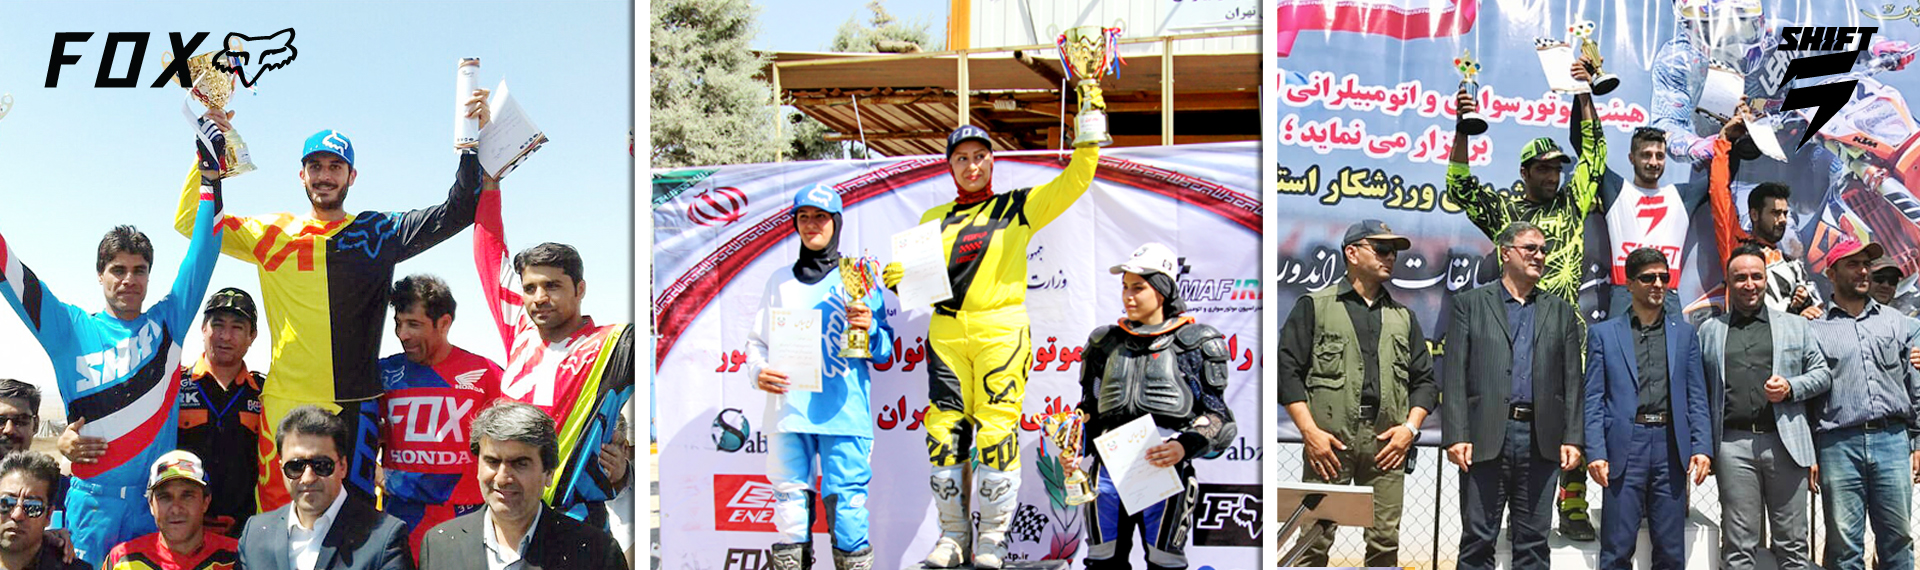 افتخارات اعضای تیم فاکس و شیفت در مسابقات موتورسواری ایران شهریور ماه 1397